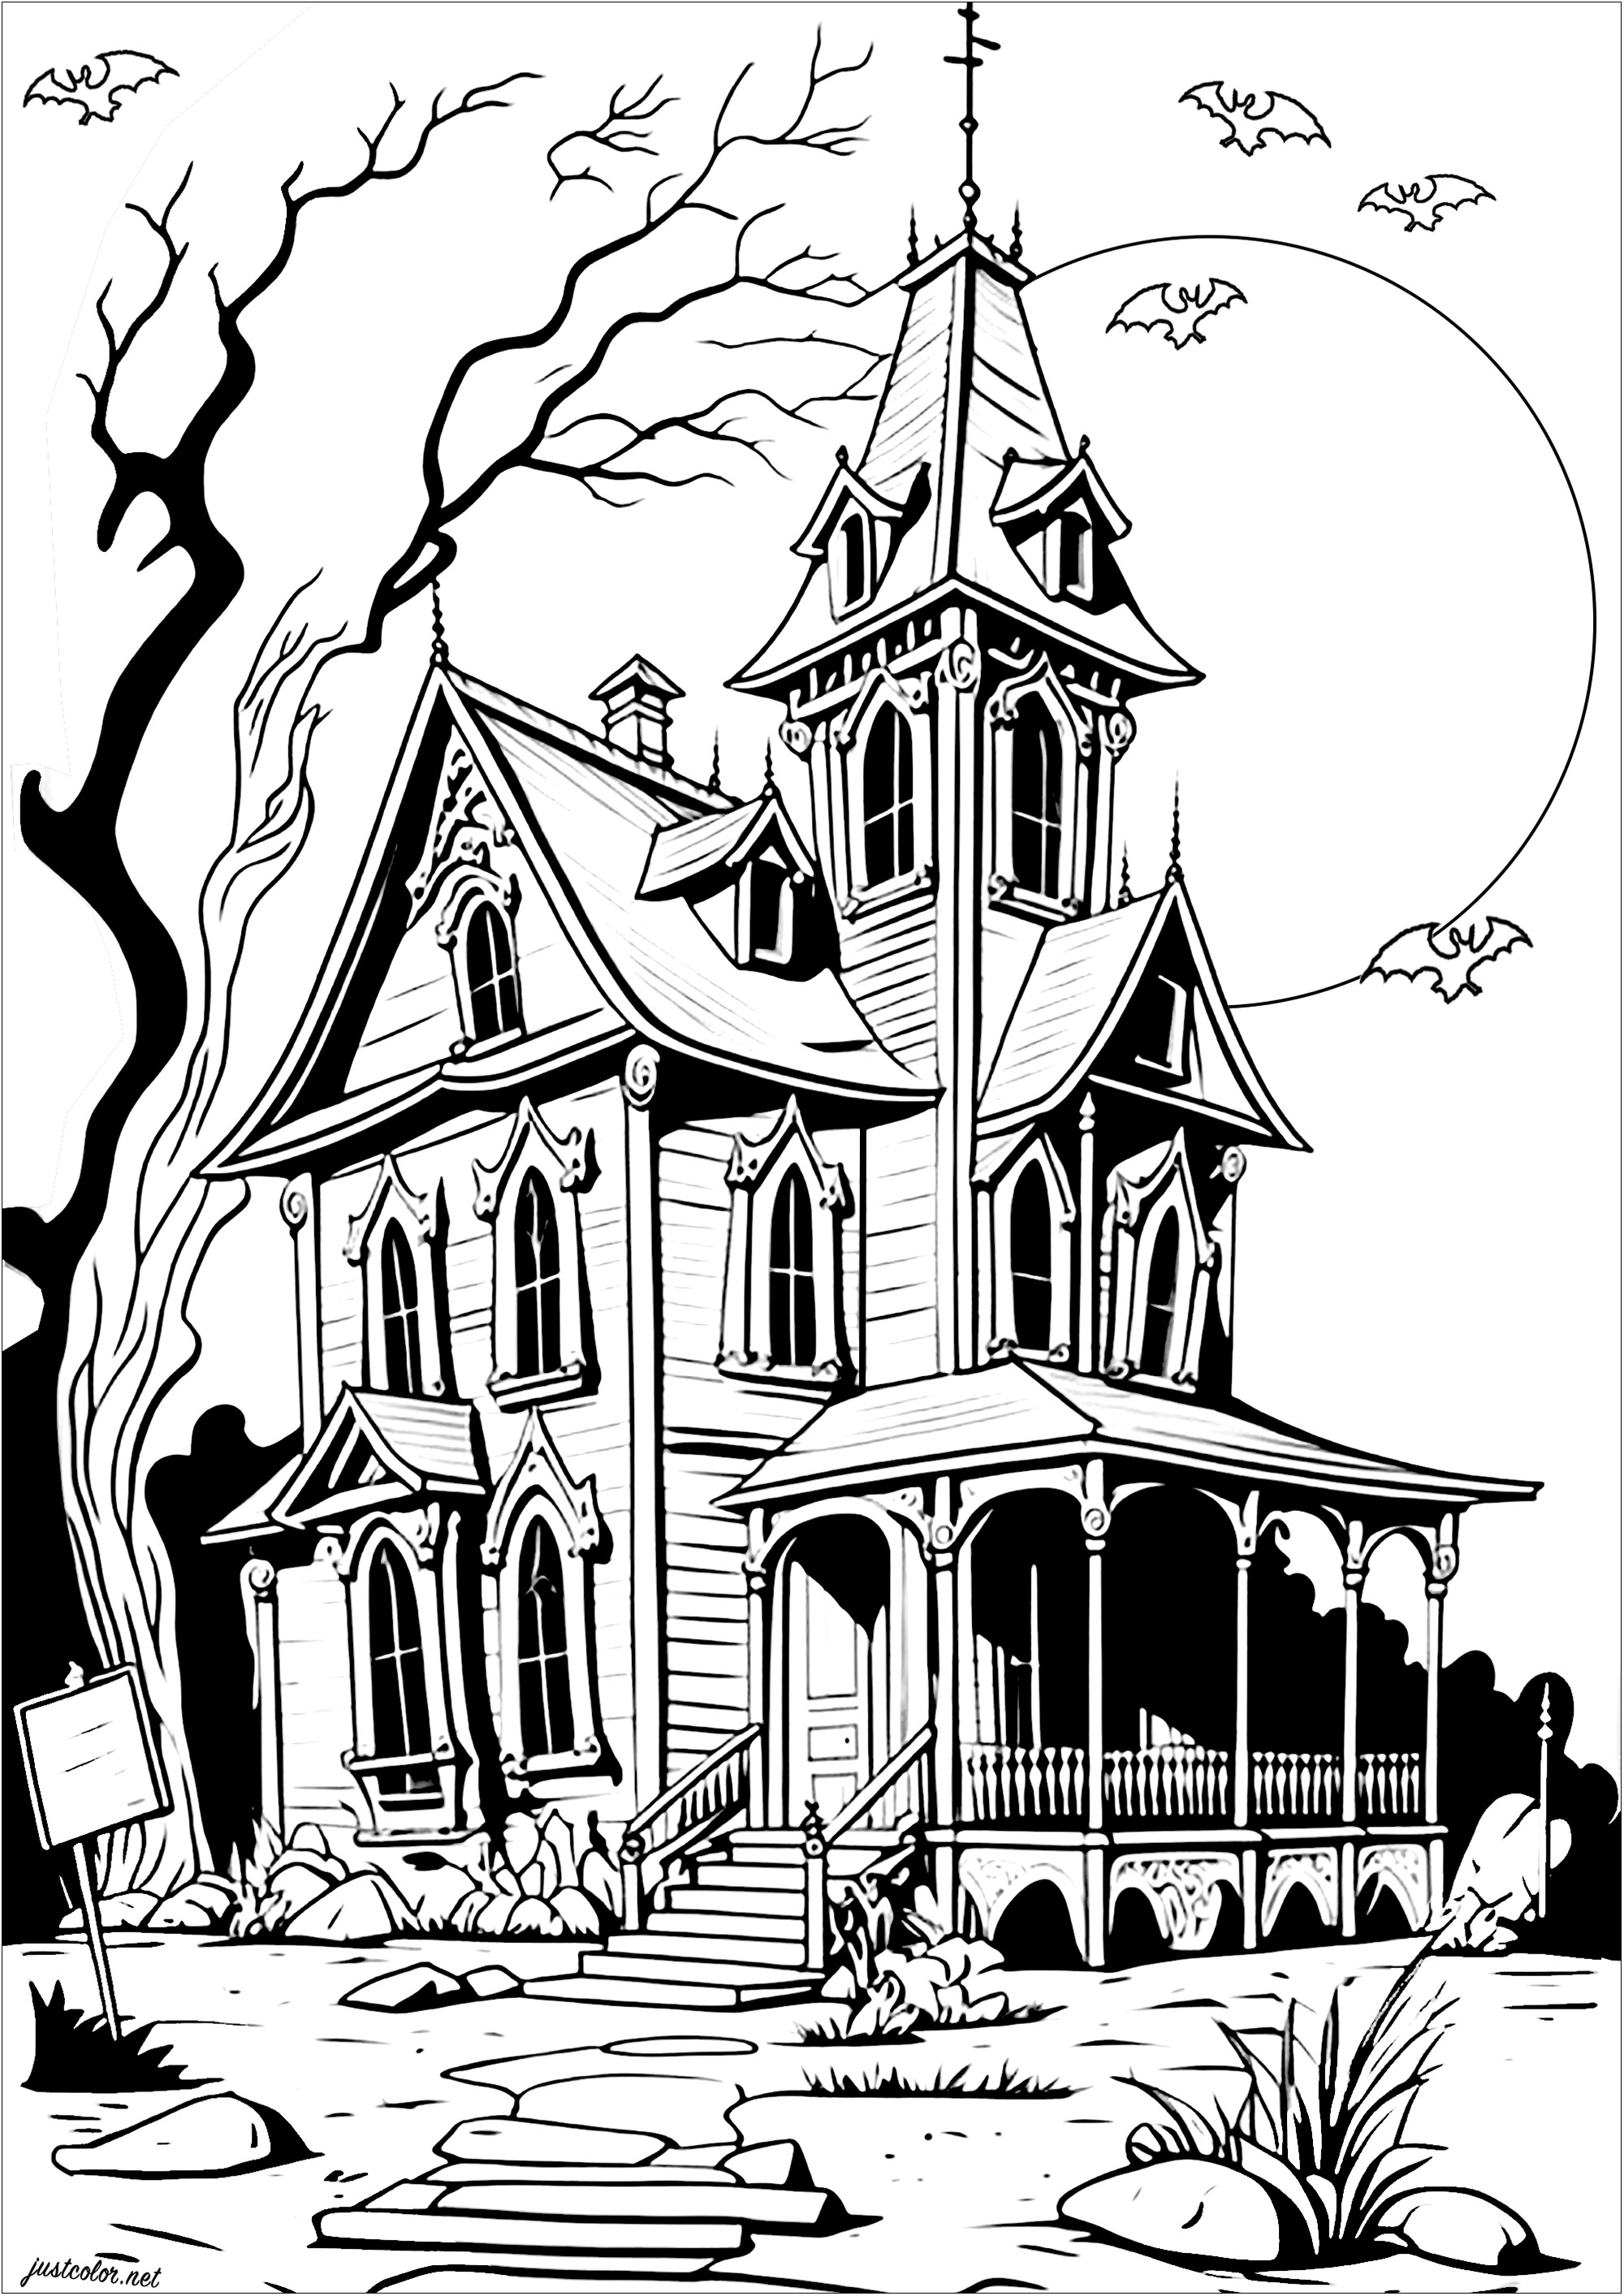 Coloración de una casa de aspecto muy lúgubre. ¿Te atreverás a entrar en esta casa aparentemente habitada por unos espíritus? Los murciélagos la protegen...